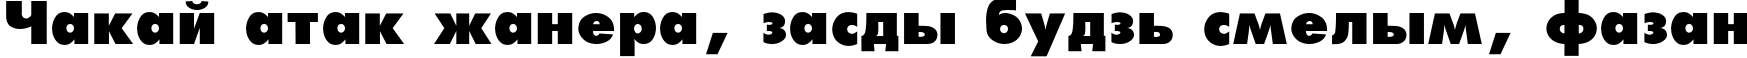 Пример написания шрифтом Futura_Extra_Black-Normal текста на белорусском